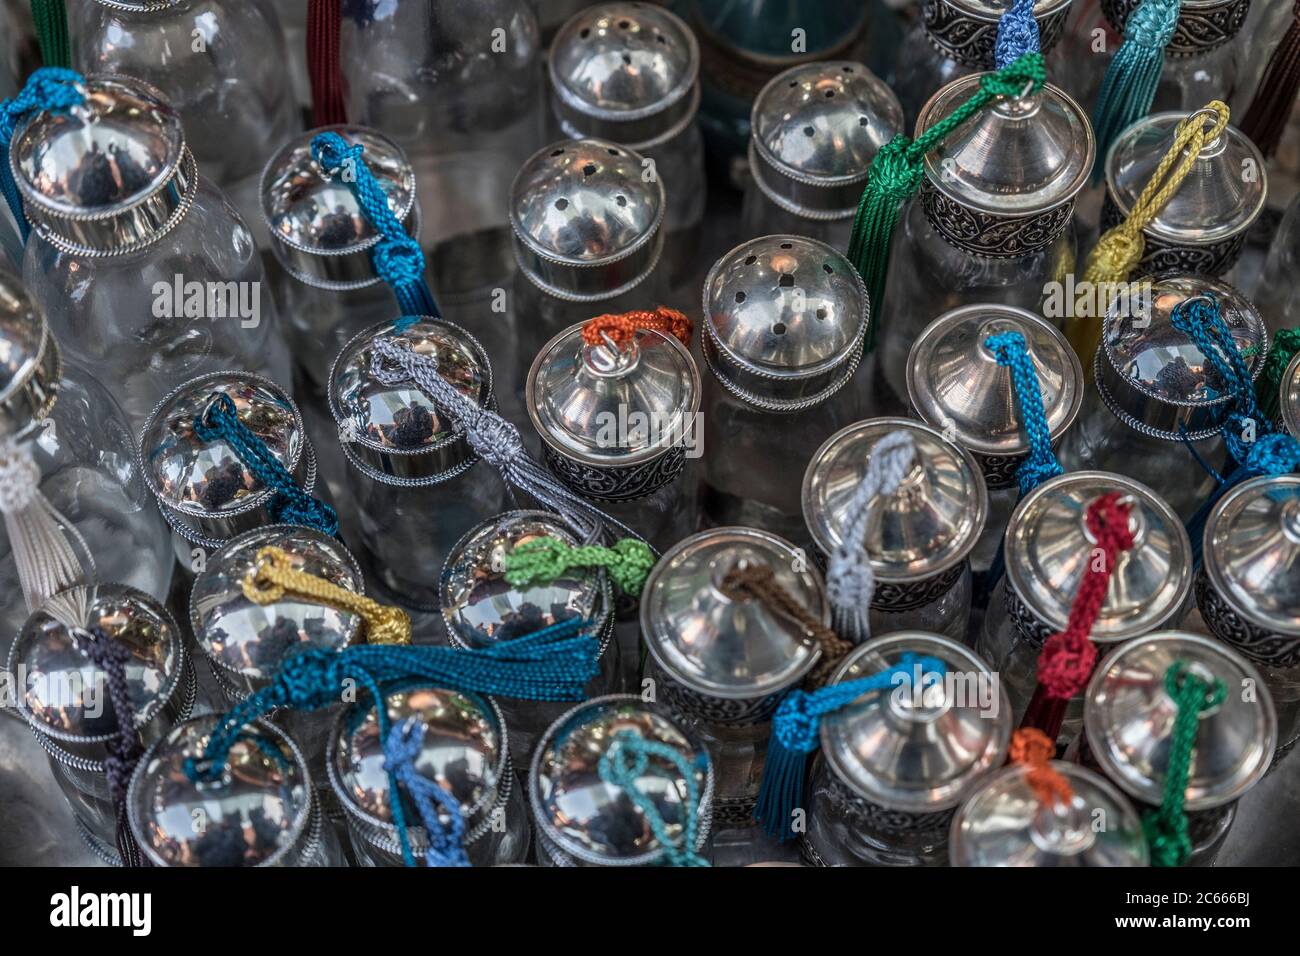 Petites bouteilles en verre pour épices, savons et liquides dans un souk à Marrakech, Maroc Banque D'Images